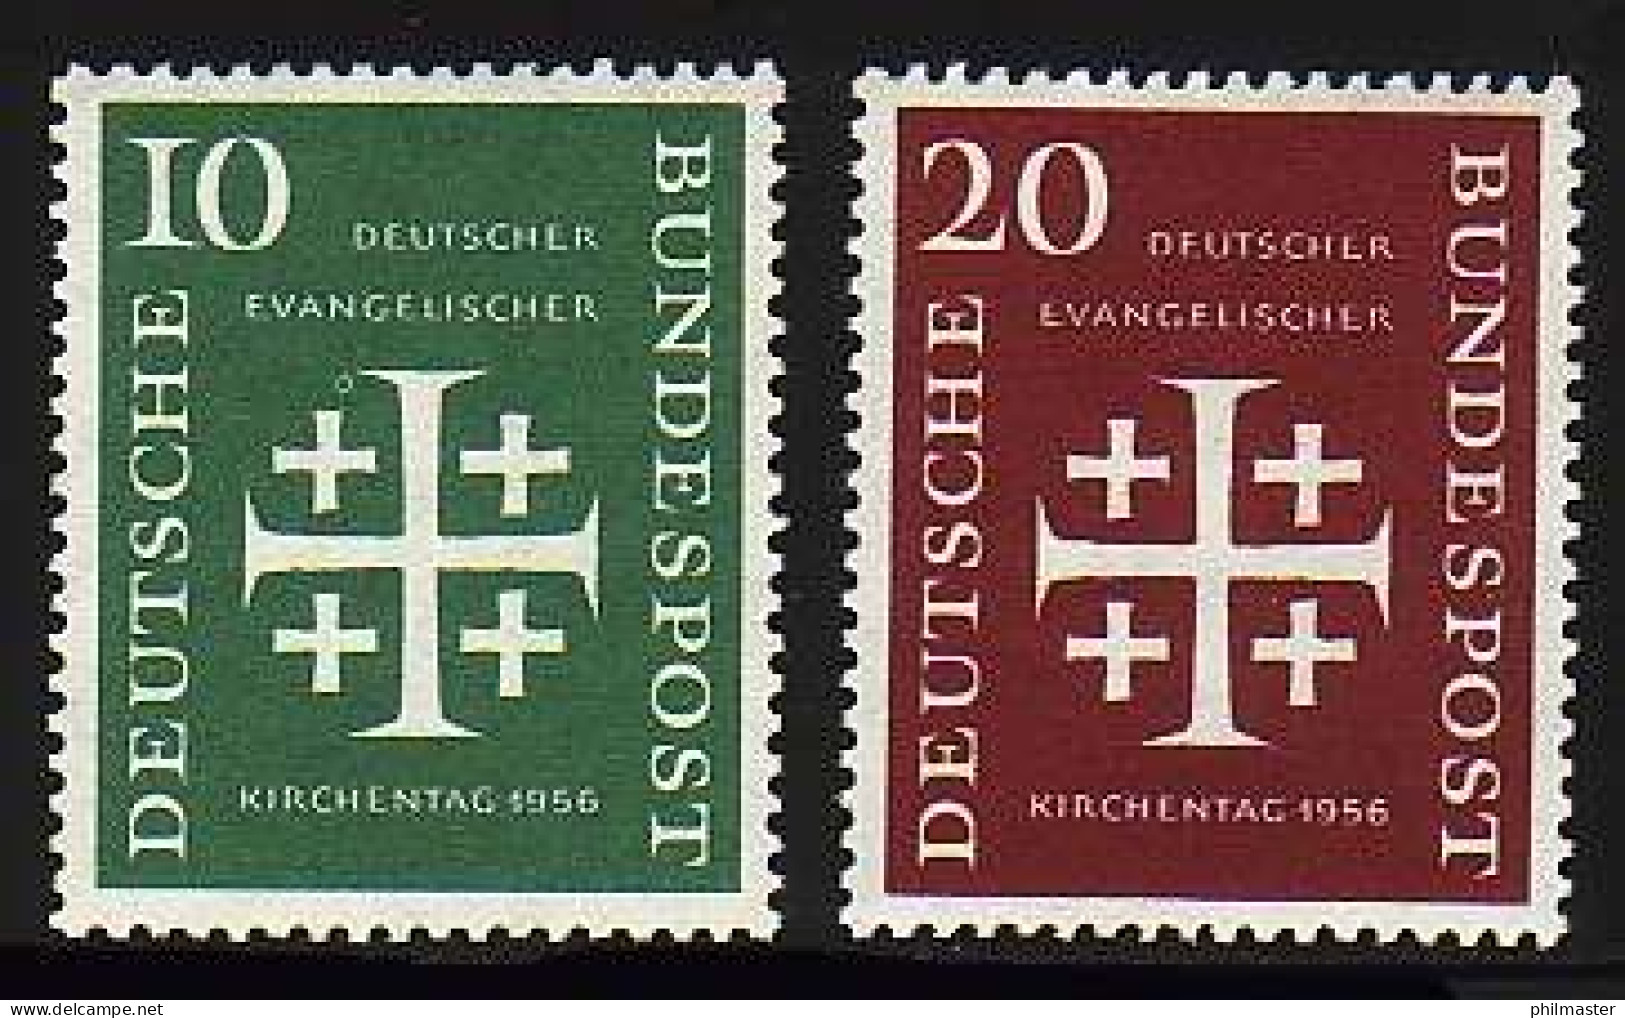 235-236 Evangelischer Kirchentag 1956 - Satz Postfrisch ** - Unused Stamps